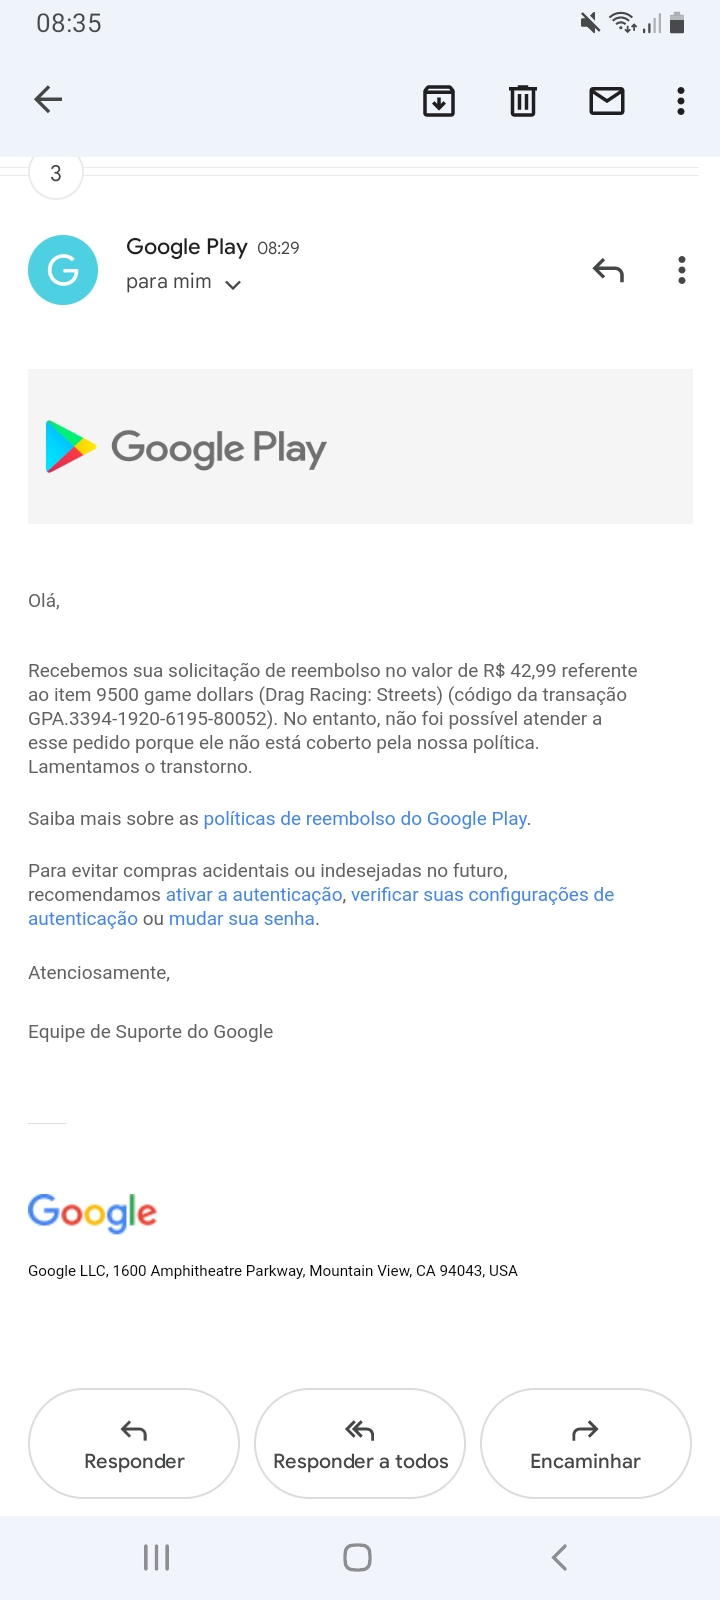 Solicitou reembolso de compra não autoriza - Comunidade Google Play